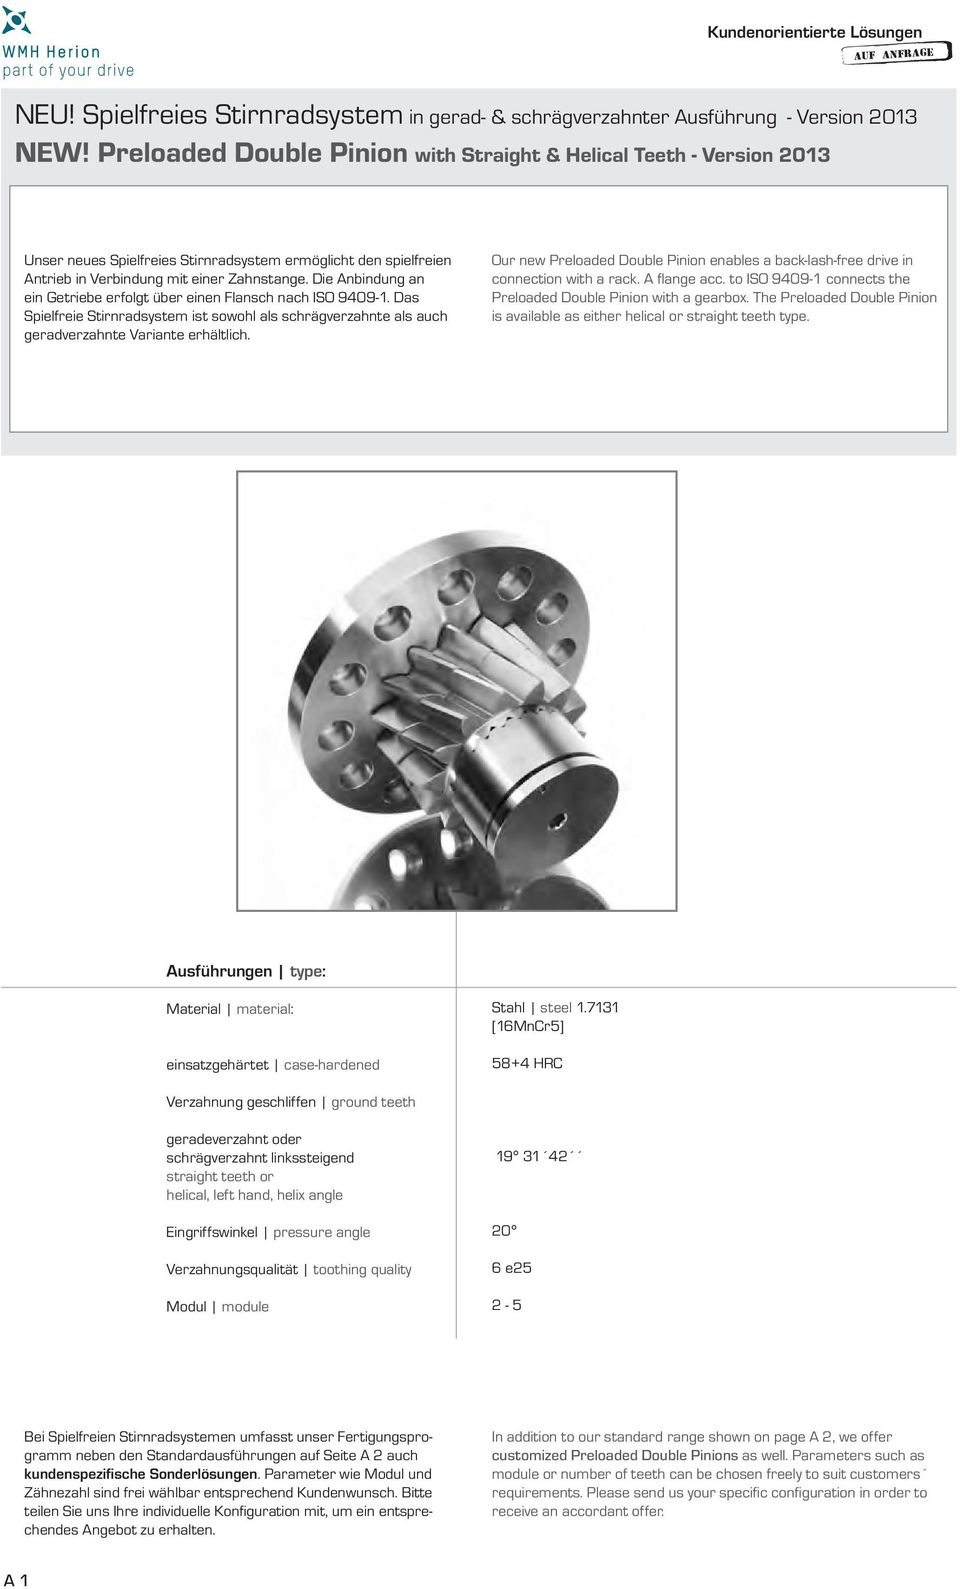 Die Anbindung an ein Getriebe erfolgt über einen Flansch nach ISO 9409-1. Das Spielfreie Stirnradsystem ist sowohl als schrägverzahnte als auch geradverzahnte Variante erhältlich.